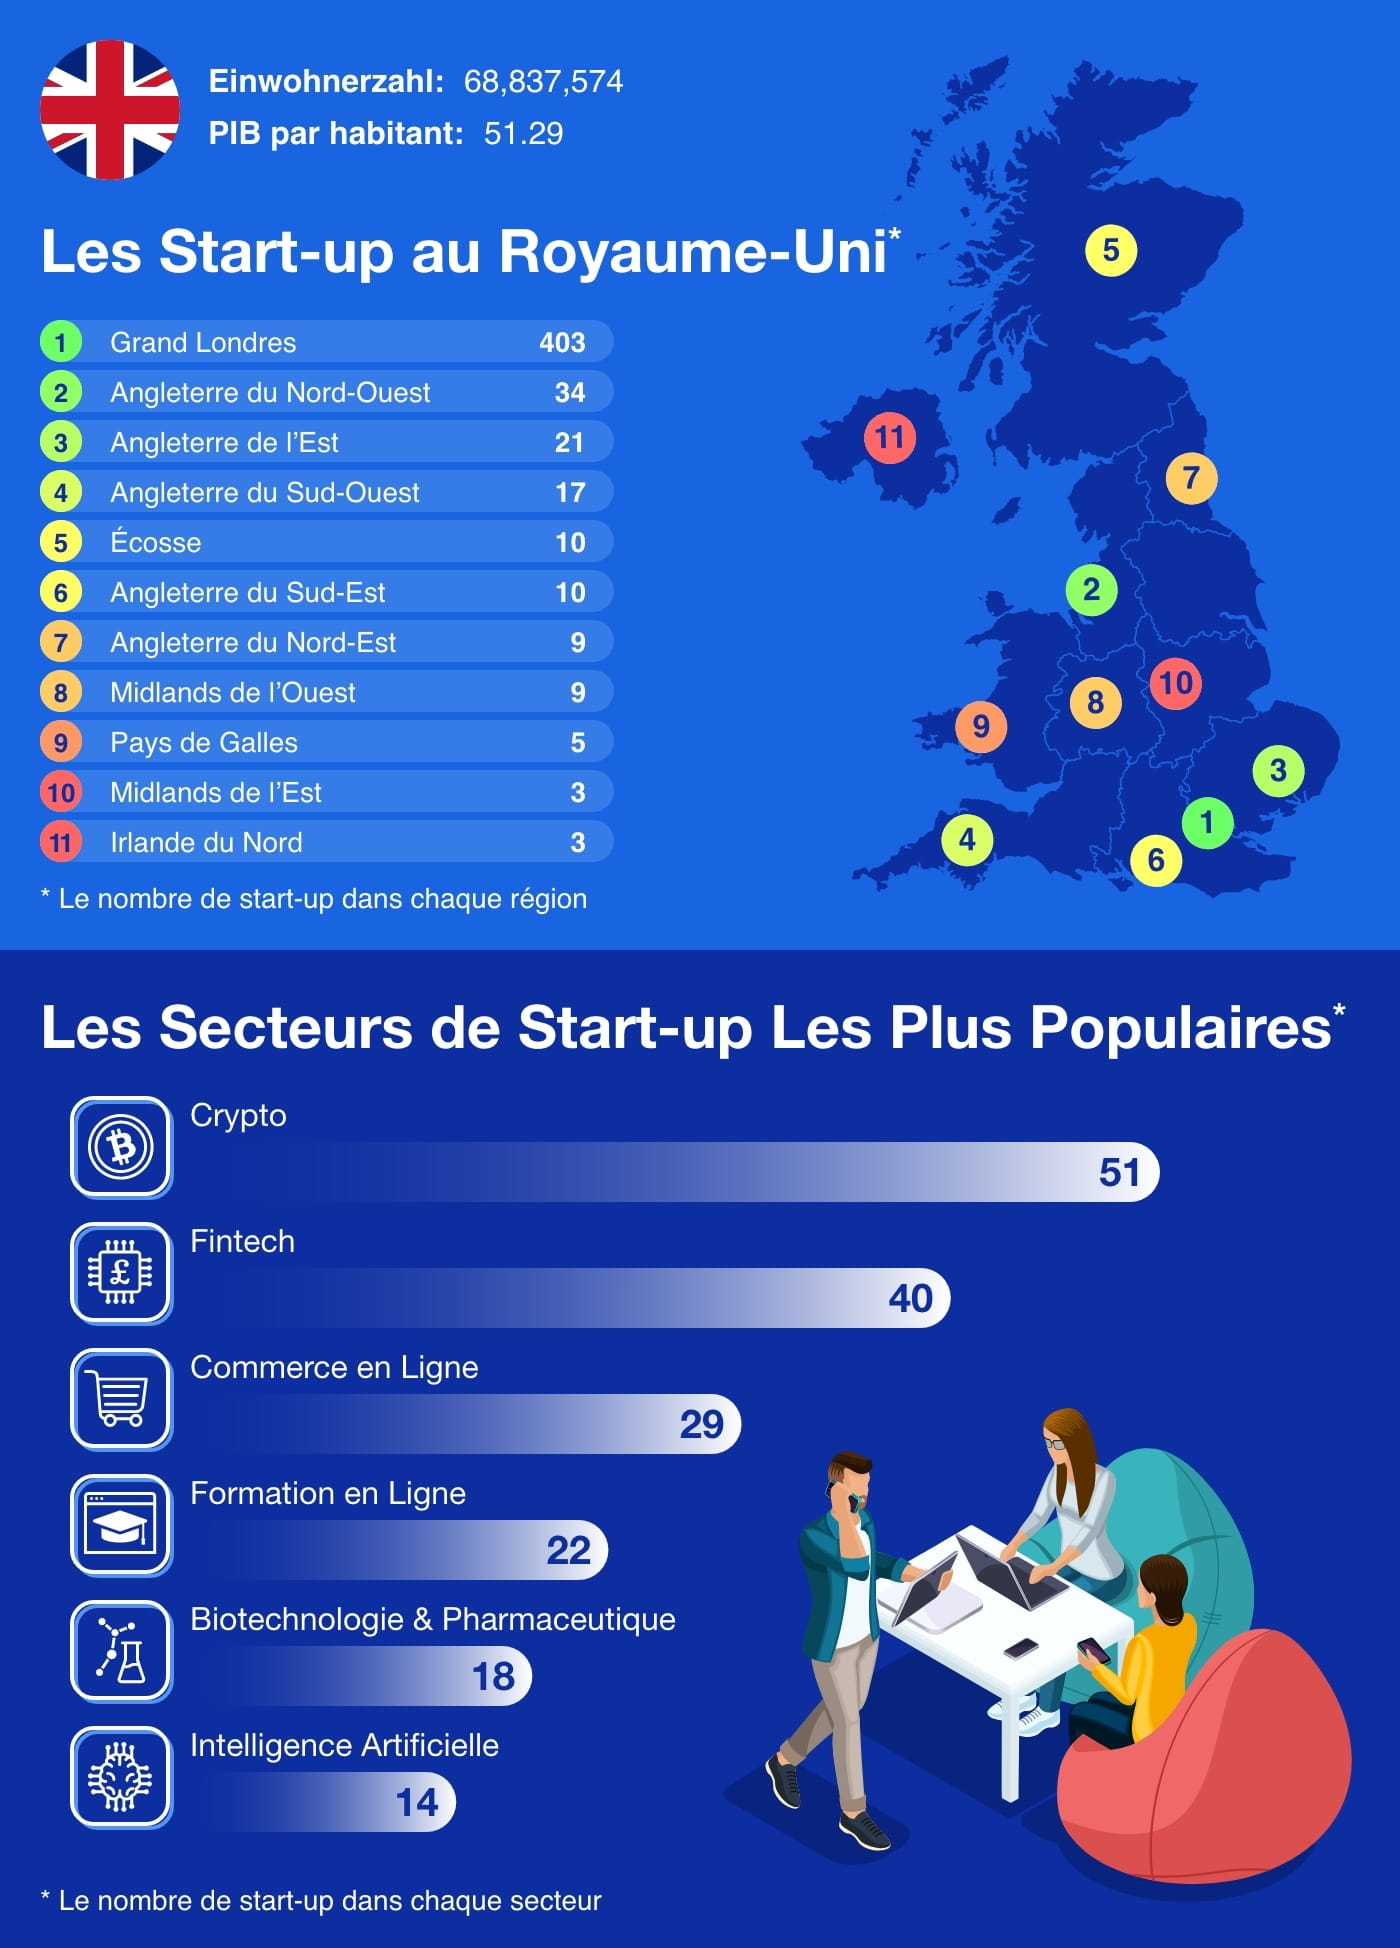 UK - European Startup Hubs